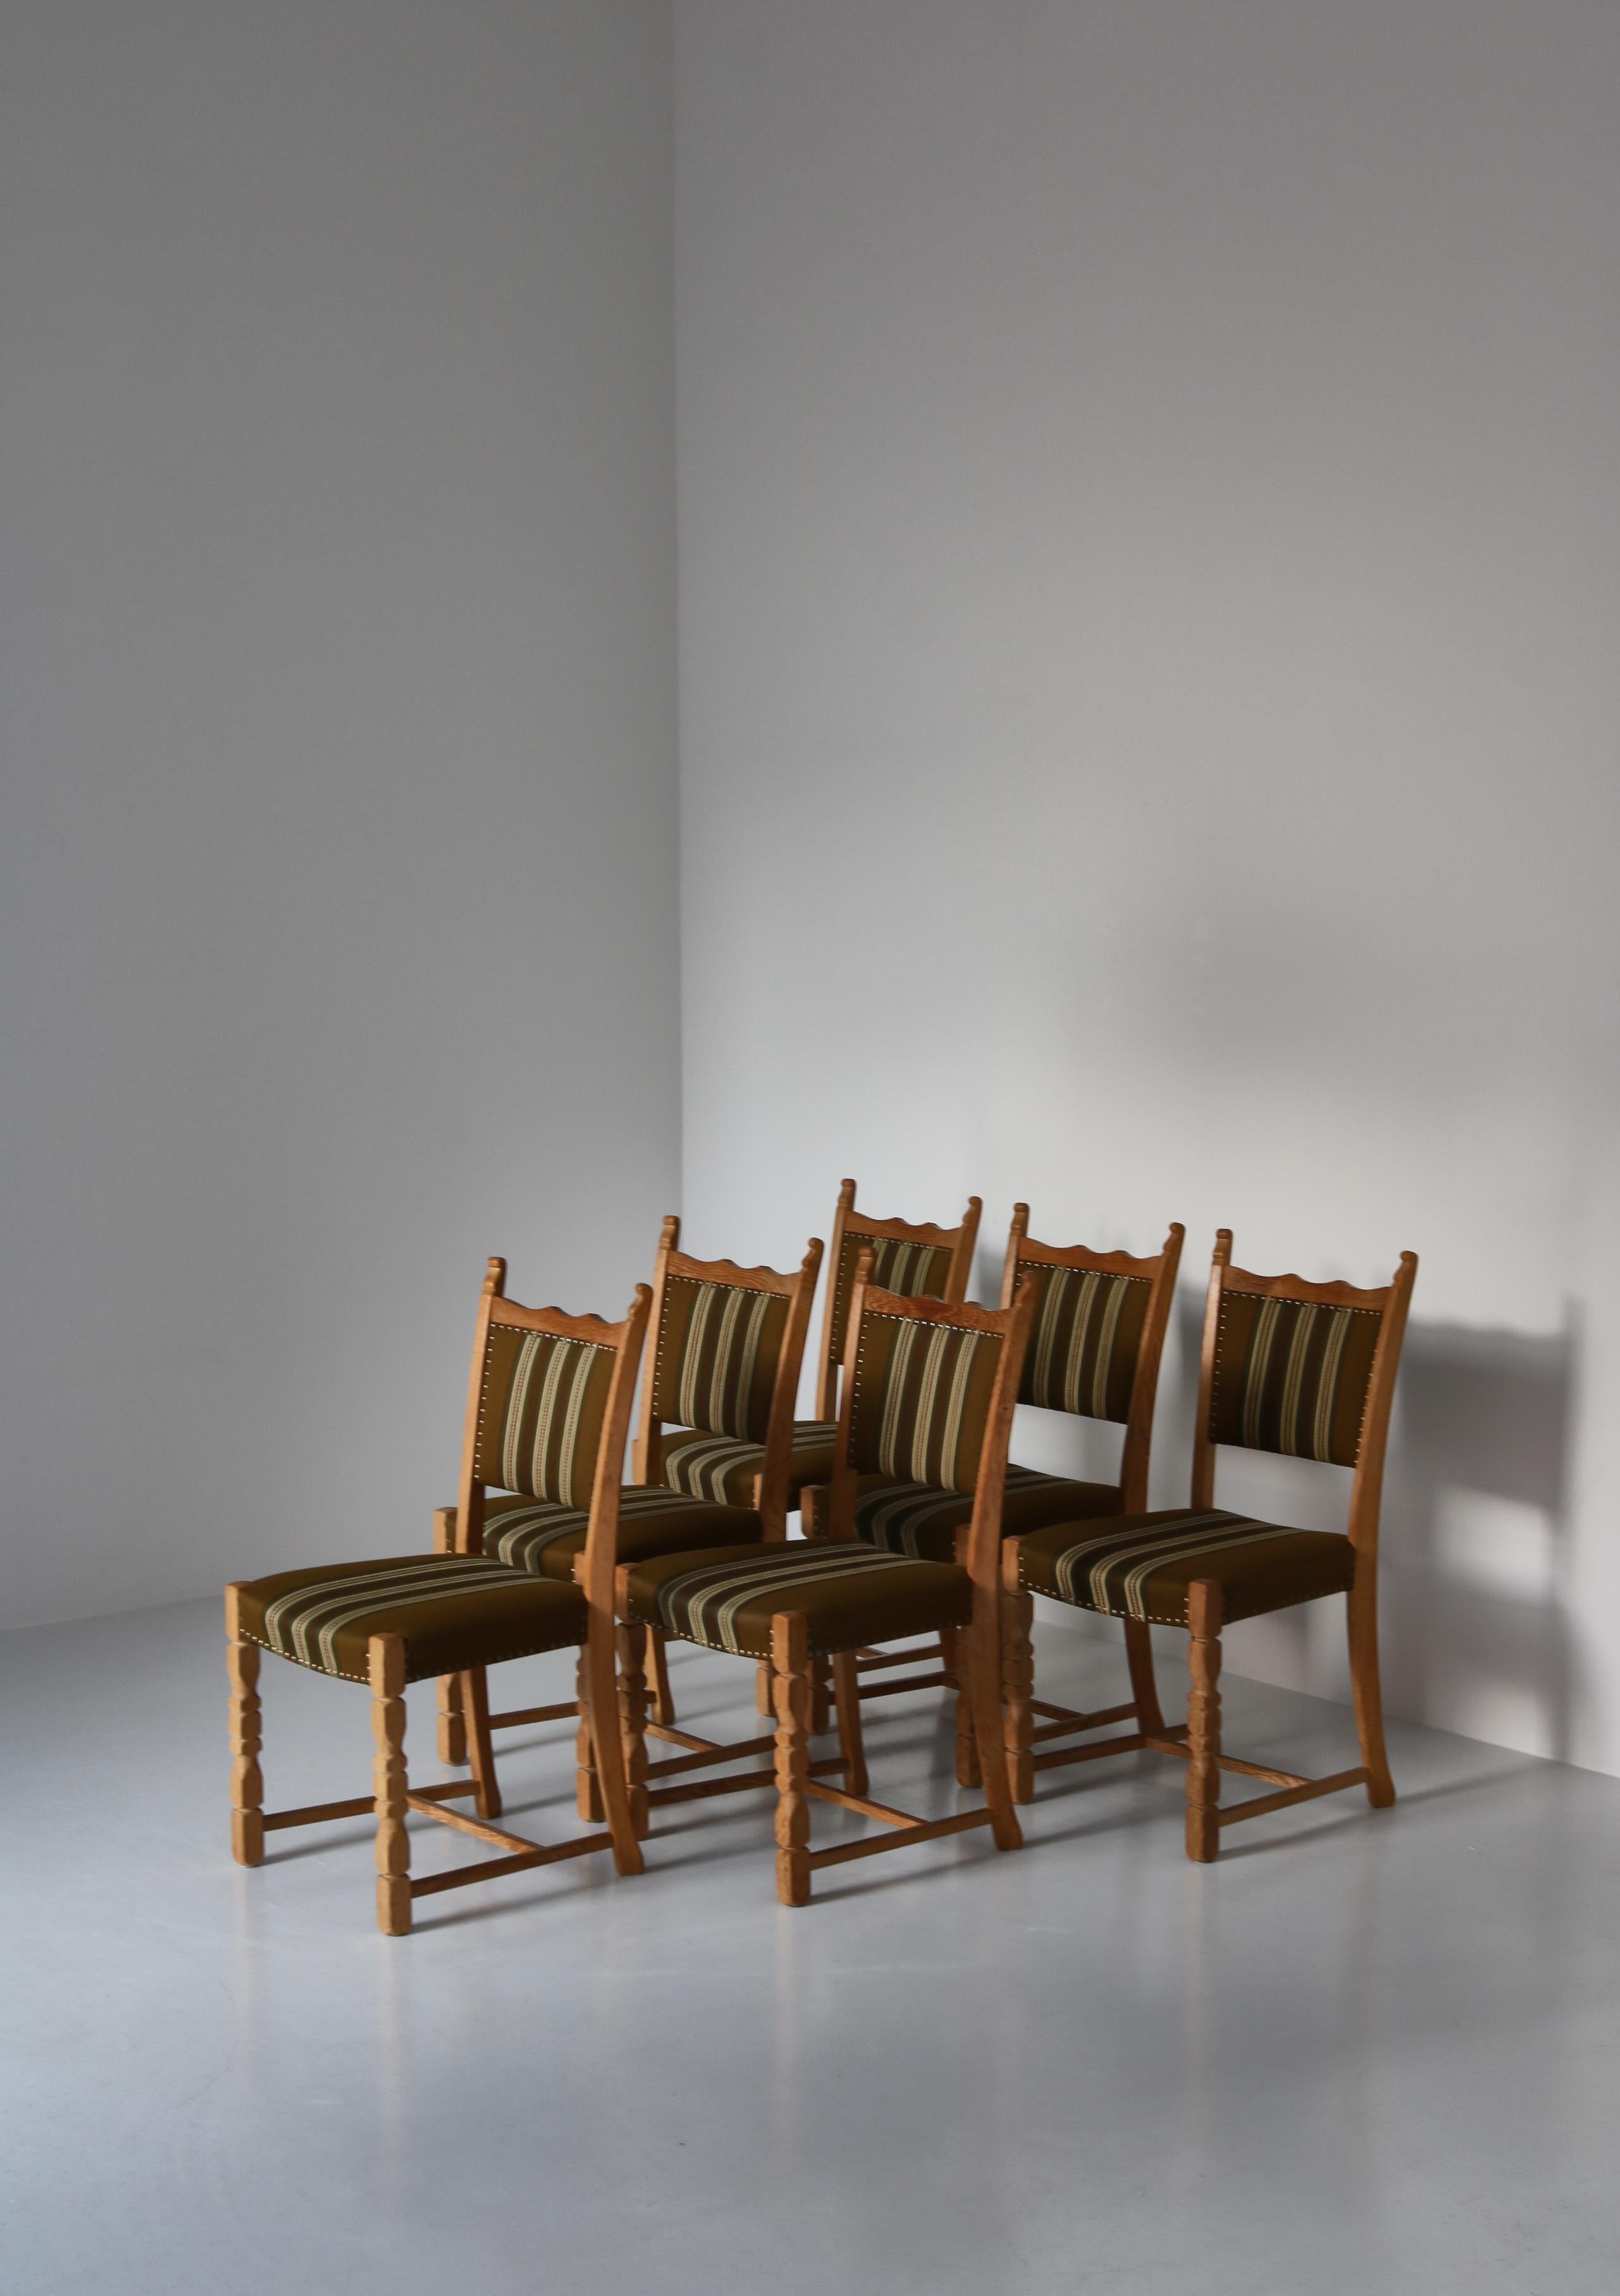 Chaises de salle à manger vintage en chêne scandinave massif patiné et rembourrage original en laine. Ce modèle a été conçu dans les années 1960 et est attribué à Henry Kjærnulff, Danemark. Le style est moderne mais avec des allusions ludiques aux